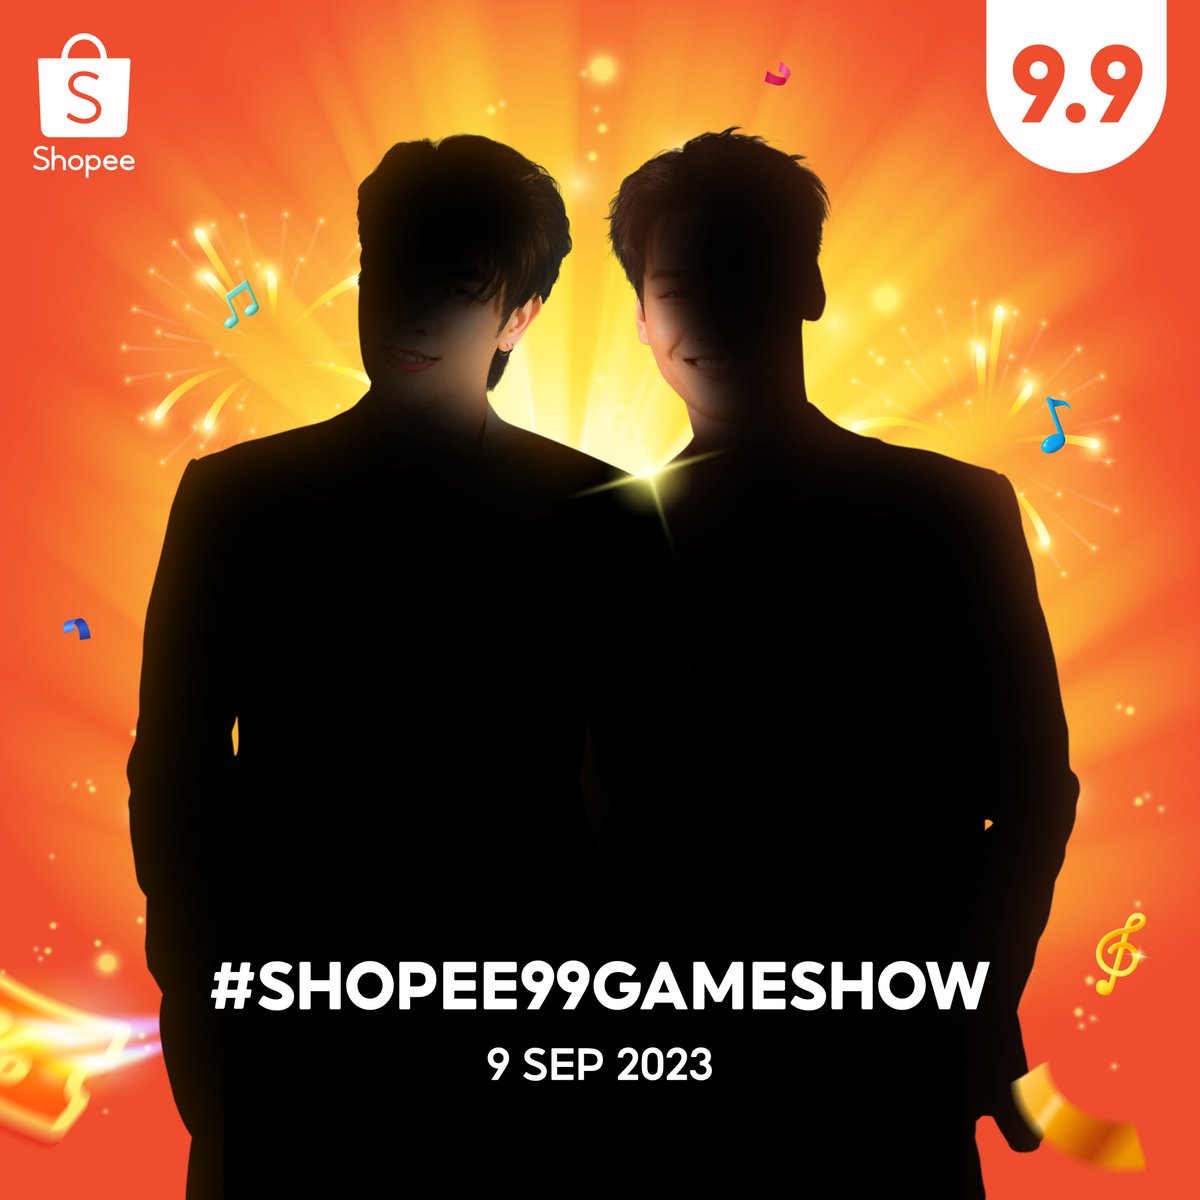 เงานี้ของใคร! 😳 💚💛 เดาถูกมั้ยใครมานำทีม #Shopee99GameShow ช้อปรอ 👉 shope.ee/9KFXiFK35t #ShopeeTH #SHOPEExWHO